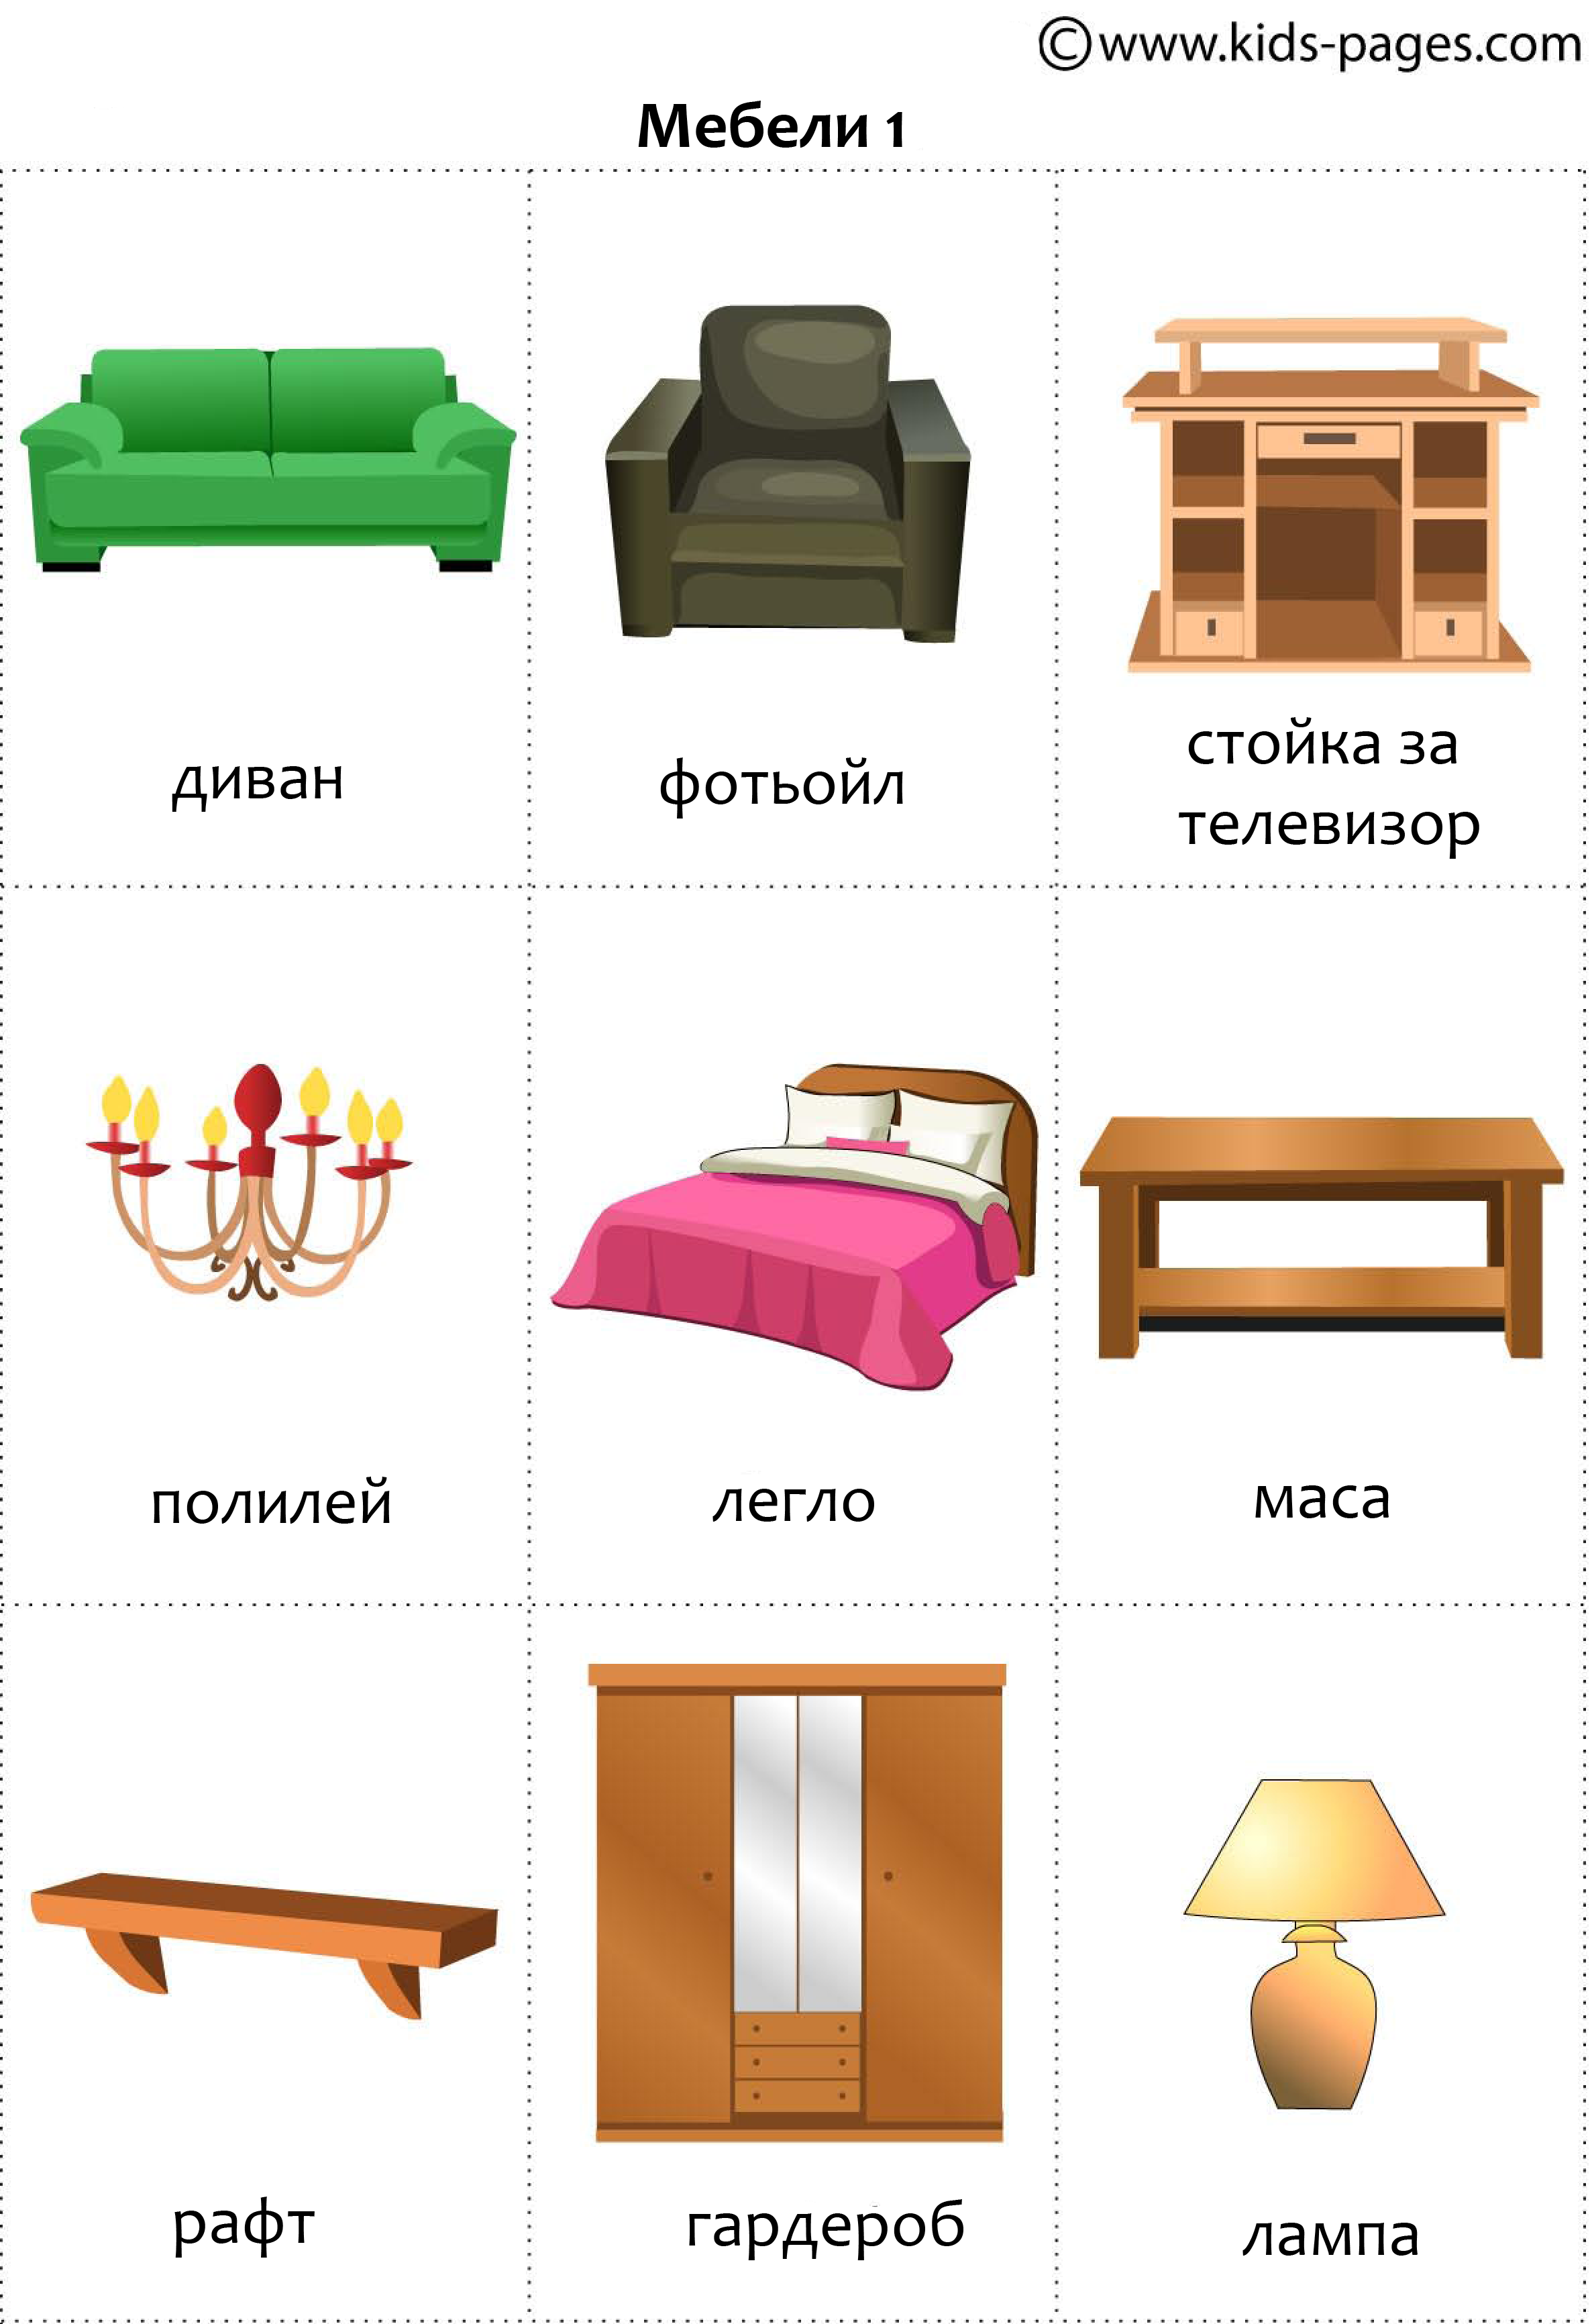 Мебель по английский для детей. Предметы мебели. Мебель на английском для детей. Предметы мебели на английском.